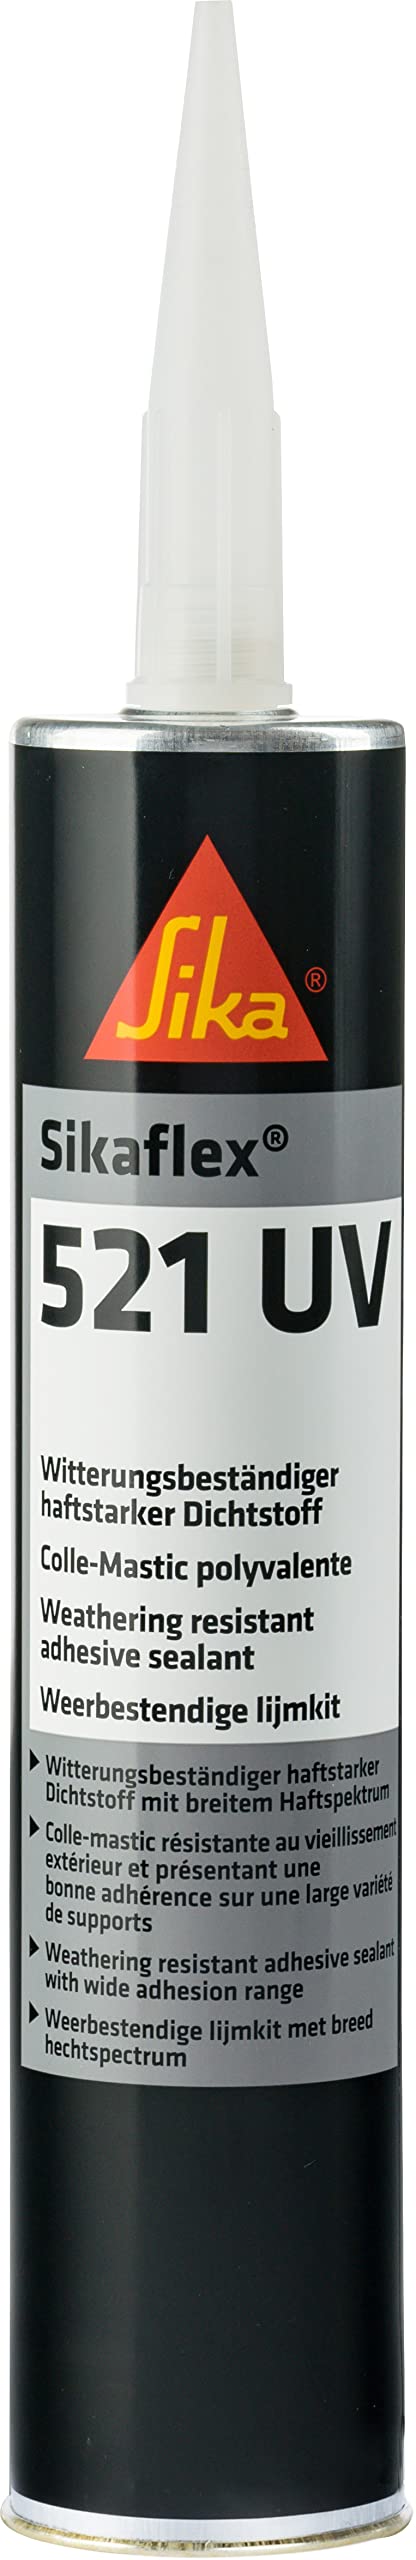 Sika - Sikaflex-521 UV, witterungsbeständiger, haftstarker Dichtstoff, 300 ml, weiß (Alte Version - Neu Sikaflex-522) von Sika